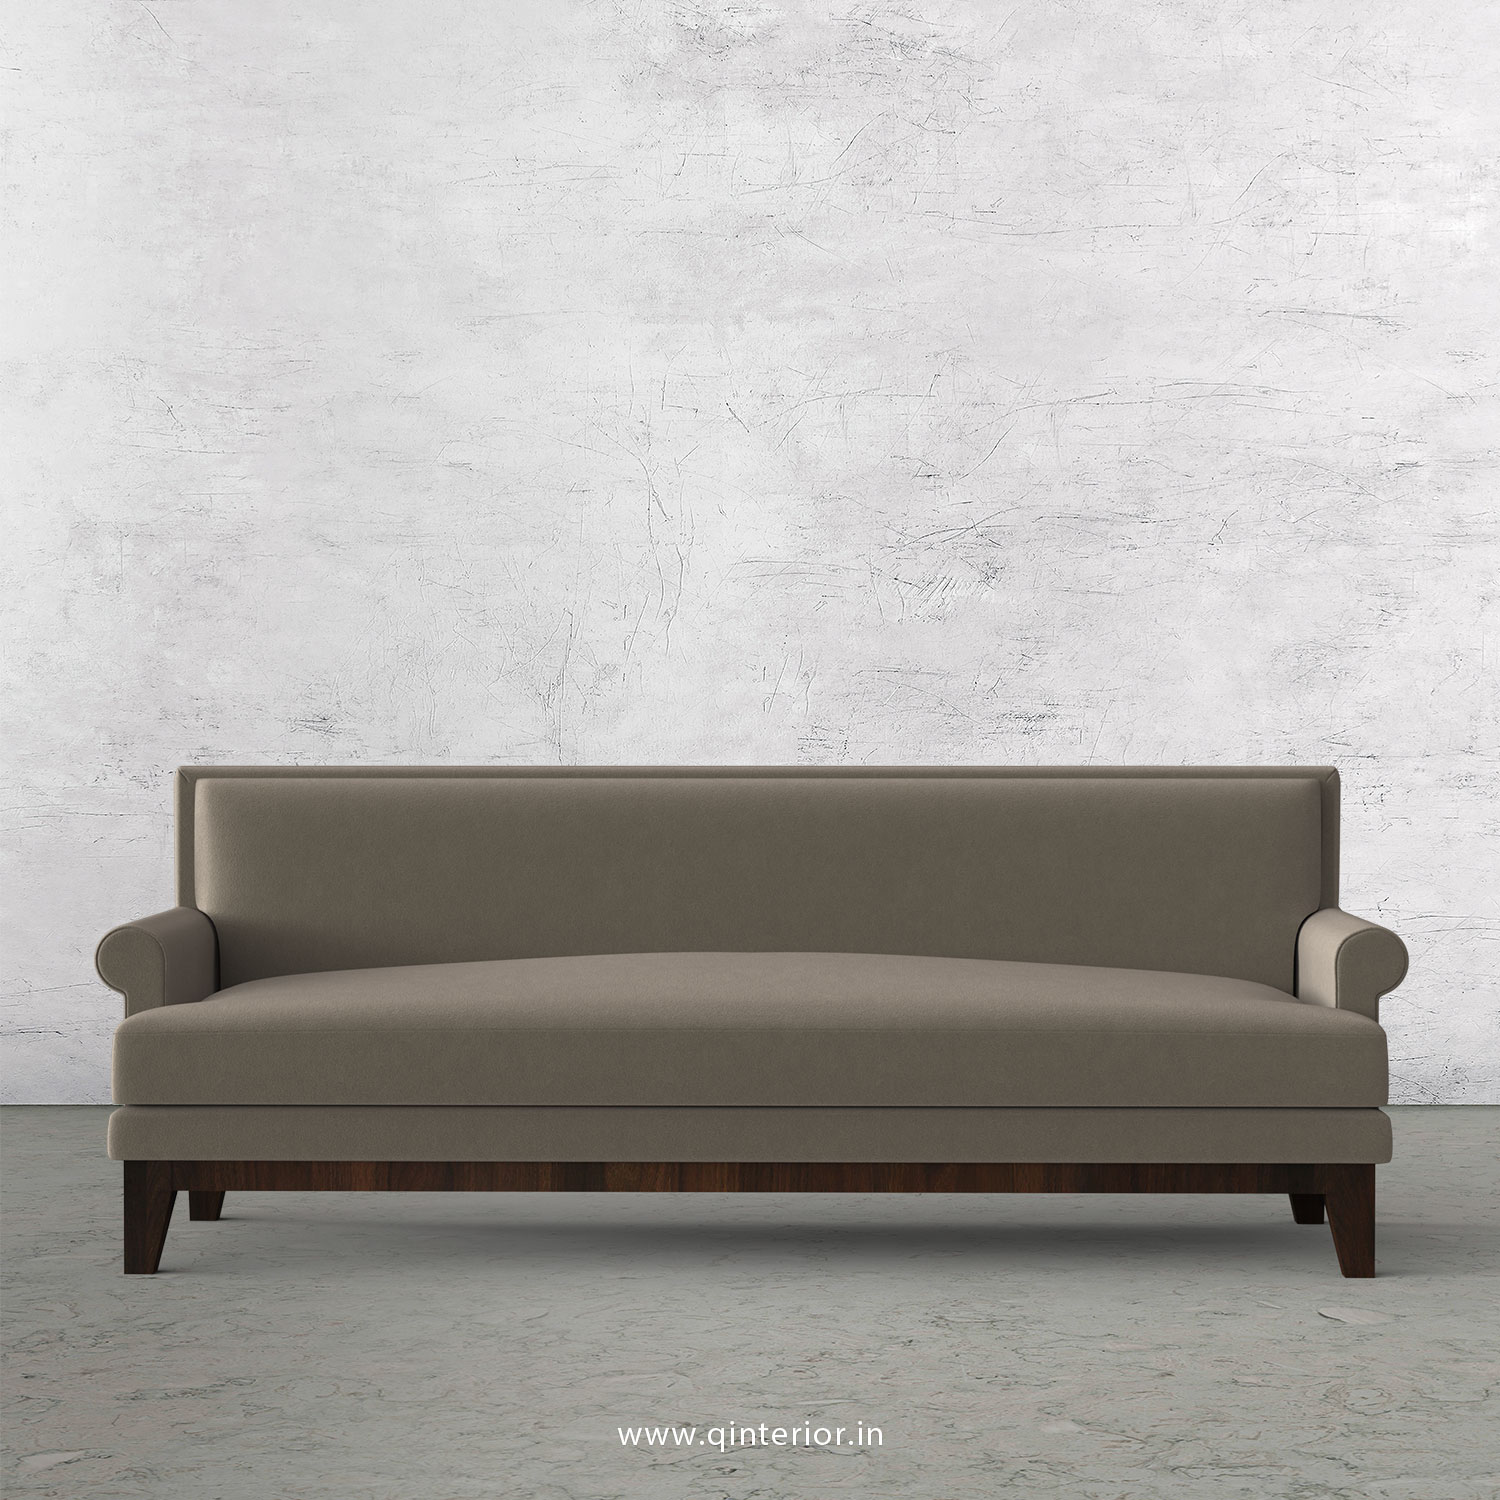 Aviana 3 Seater Sofa in Velvet Fabric - SFA001 VL12